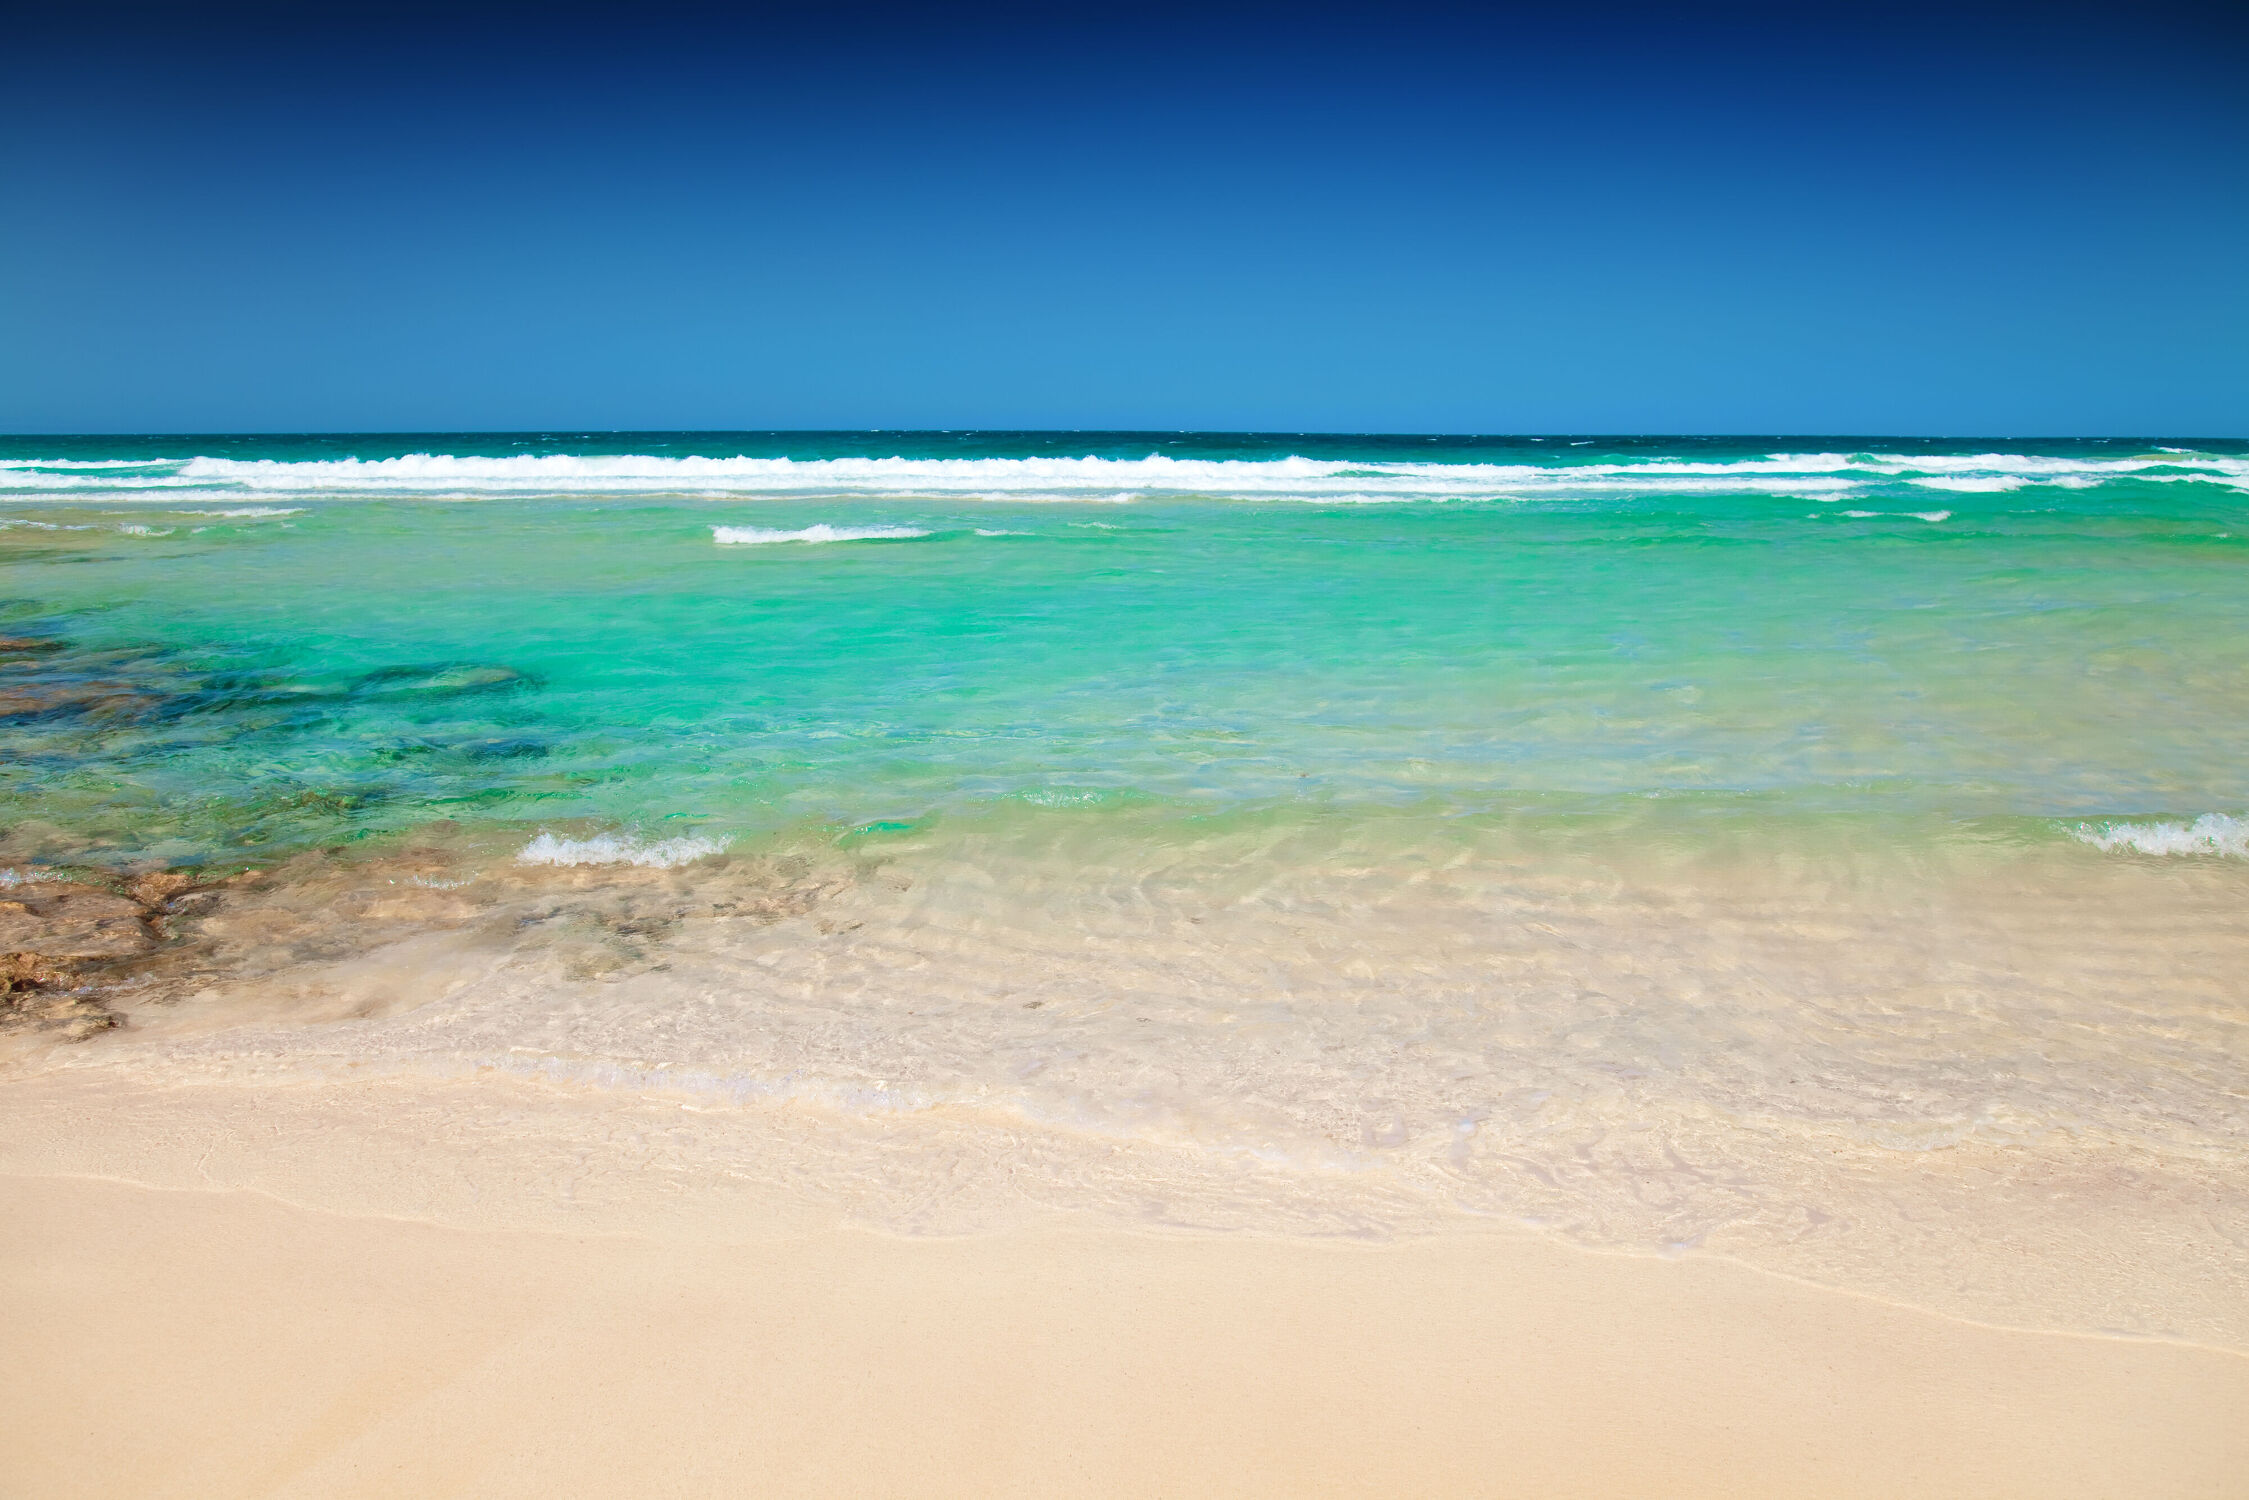 Bild mit Sand, Urlaub, Strand, Meer, Steine, Küste, Reise, Fuerteventura, Kanarische Inseln, Kanaren